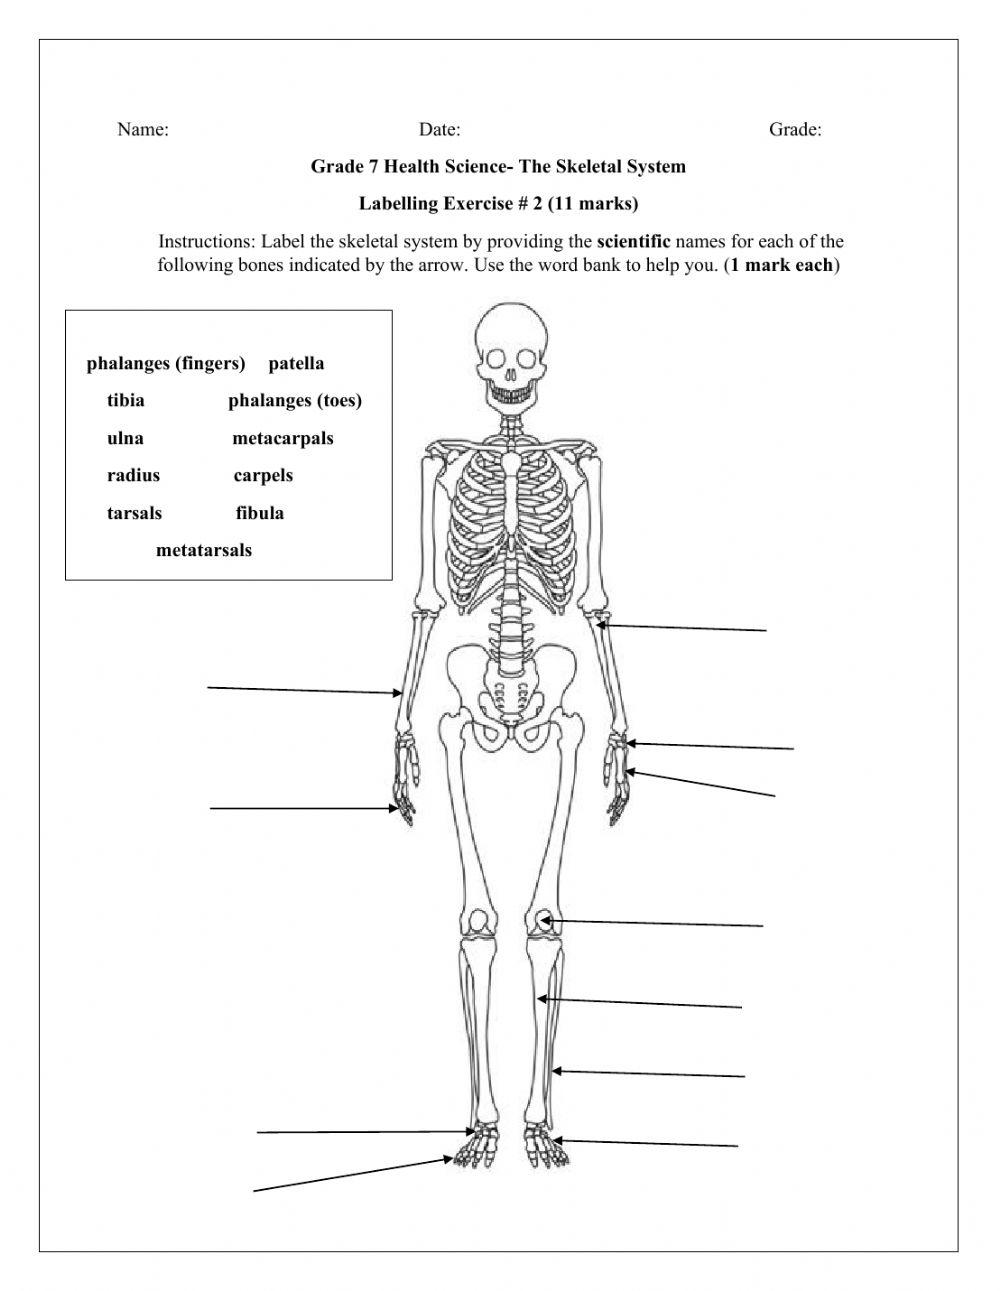 The Skeletal system